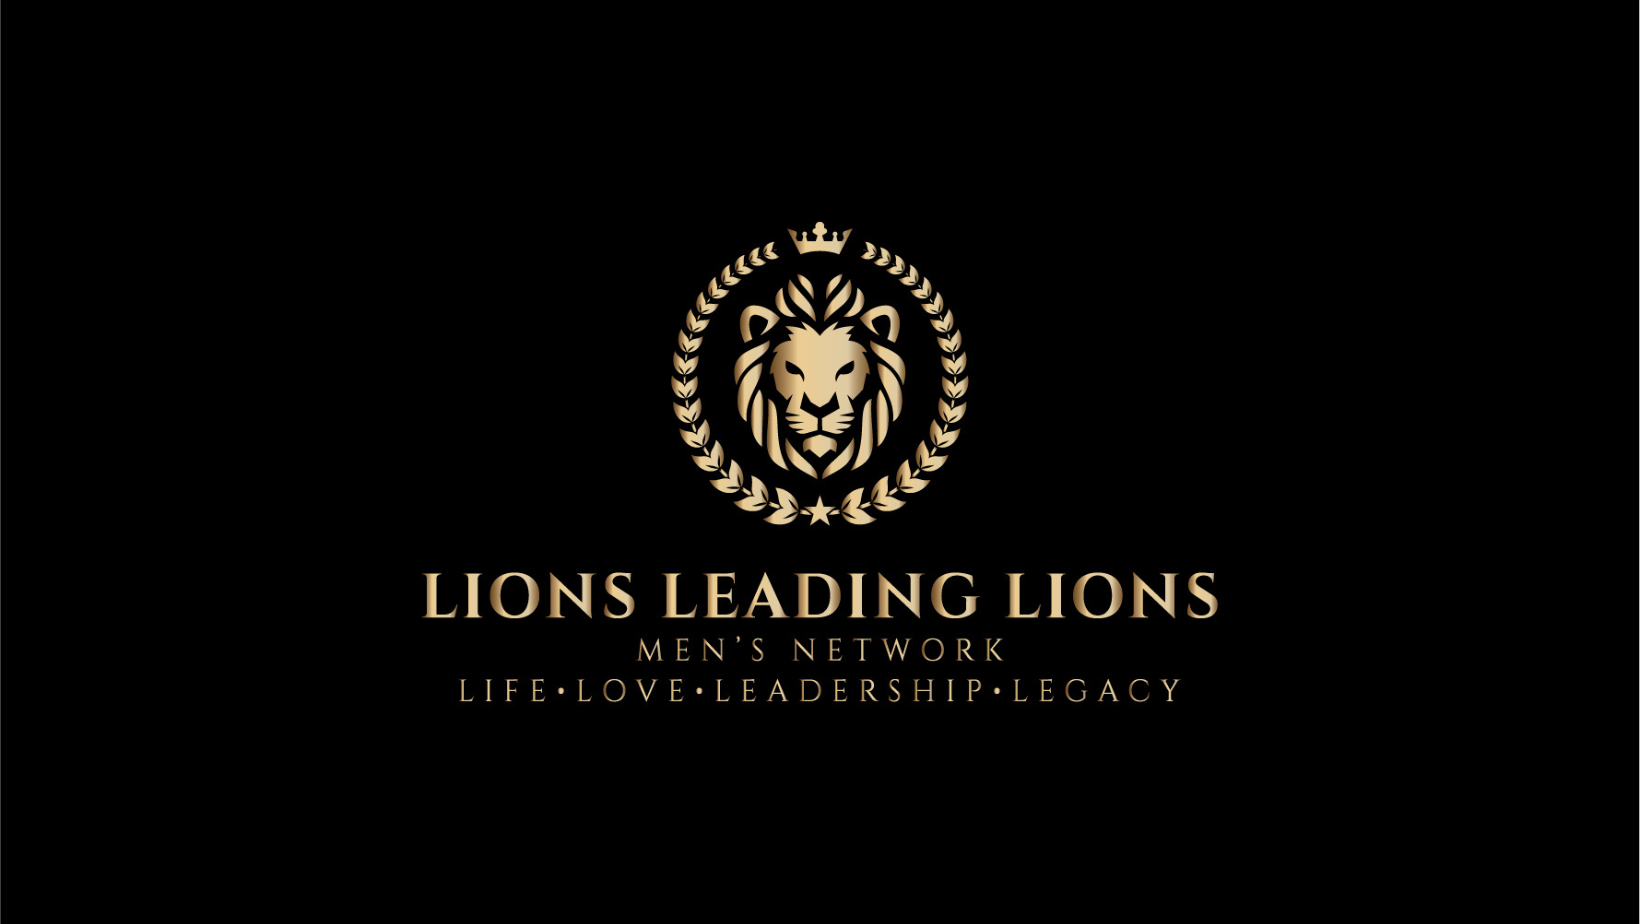 Lions Leading Lions Men’s Network